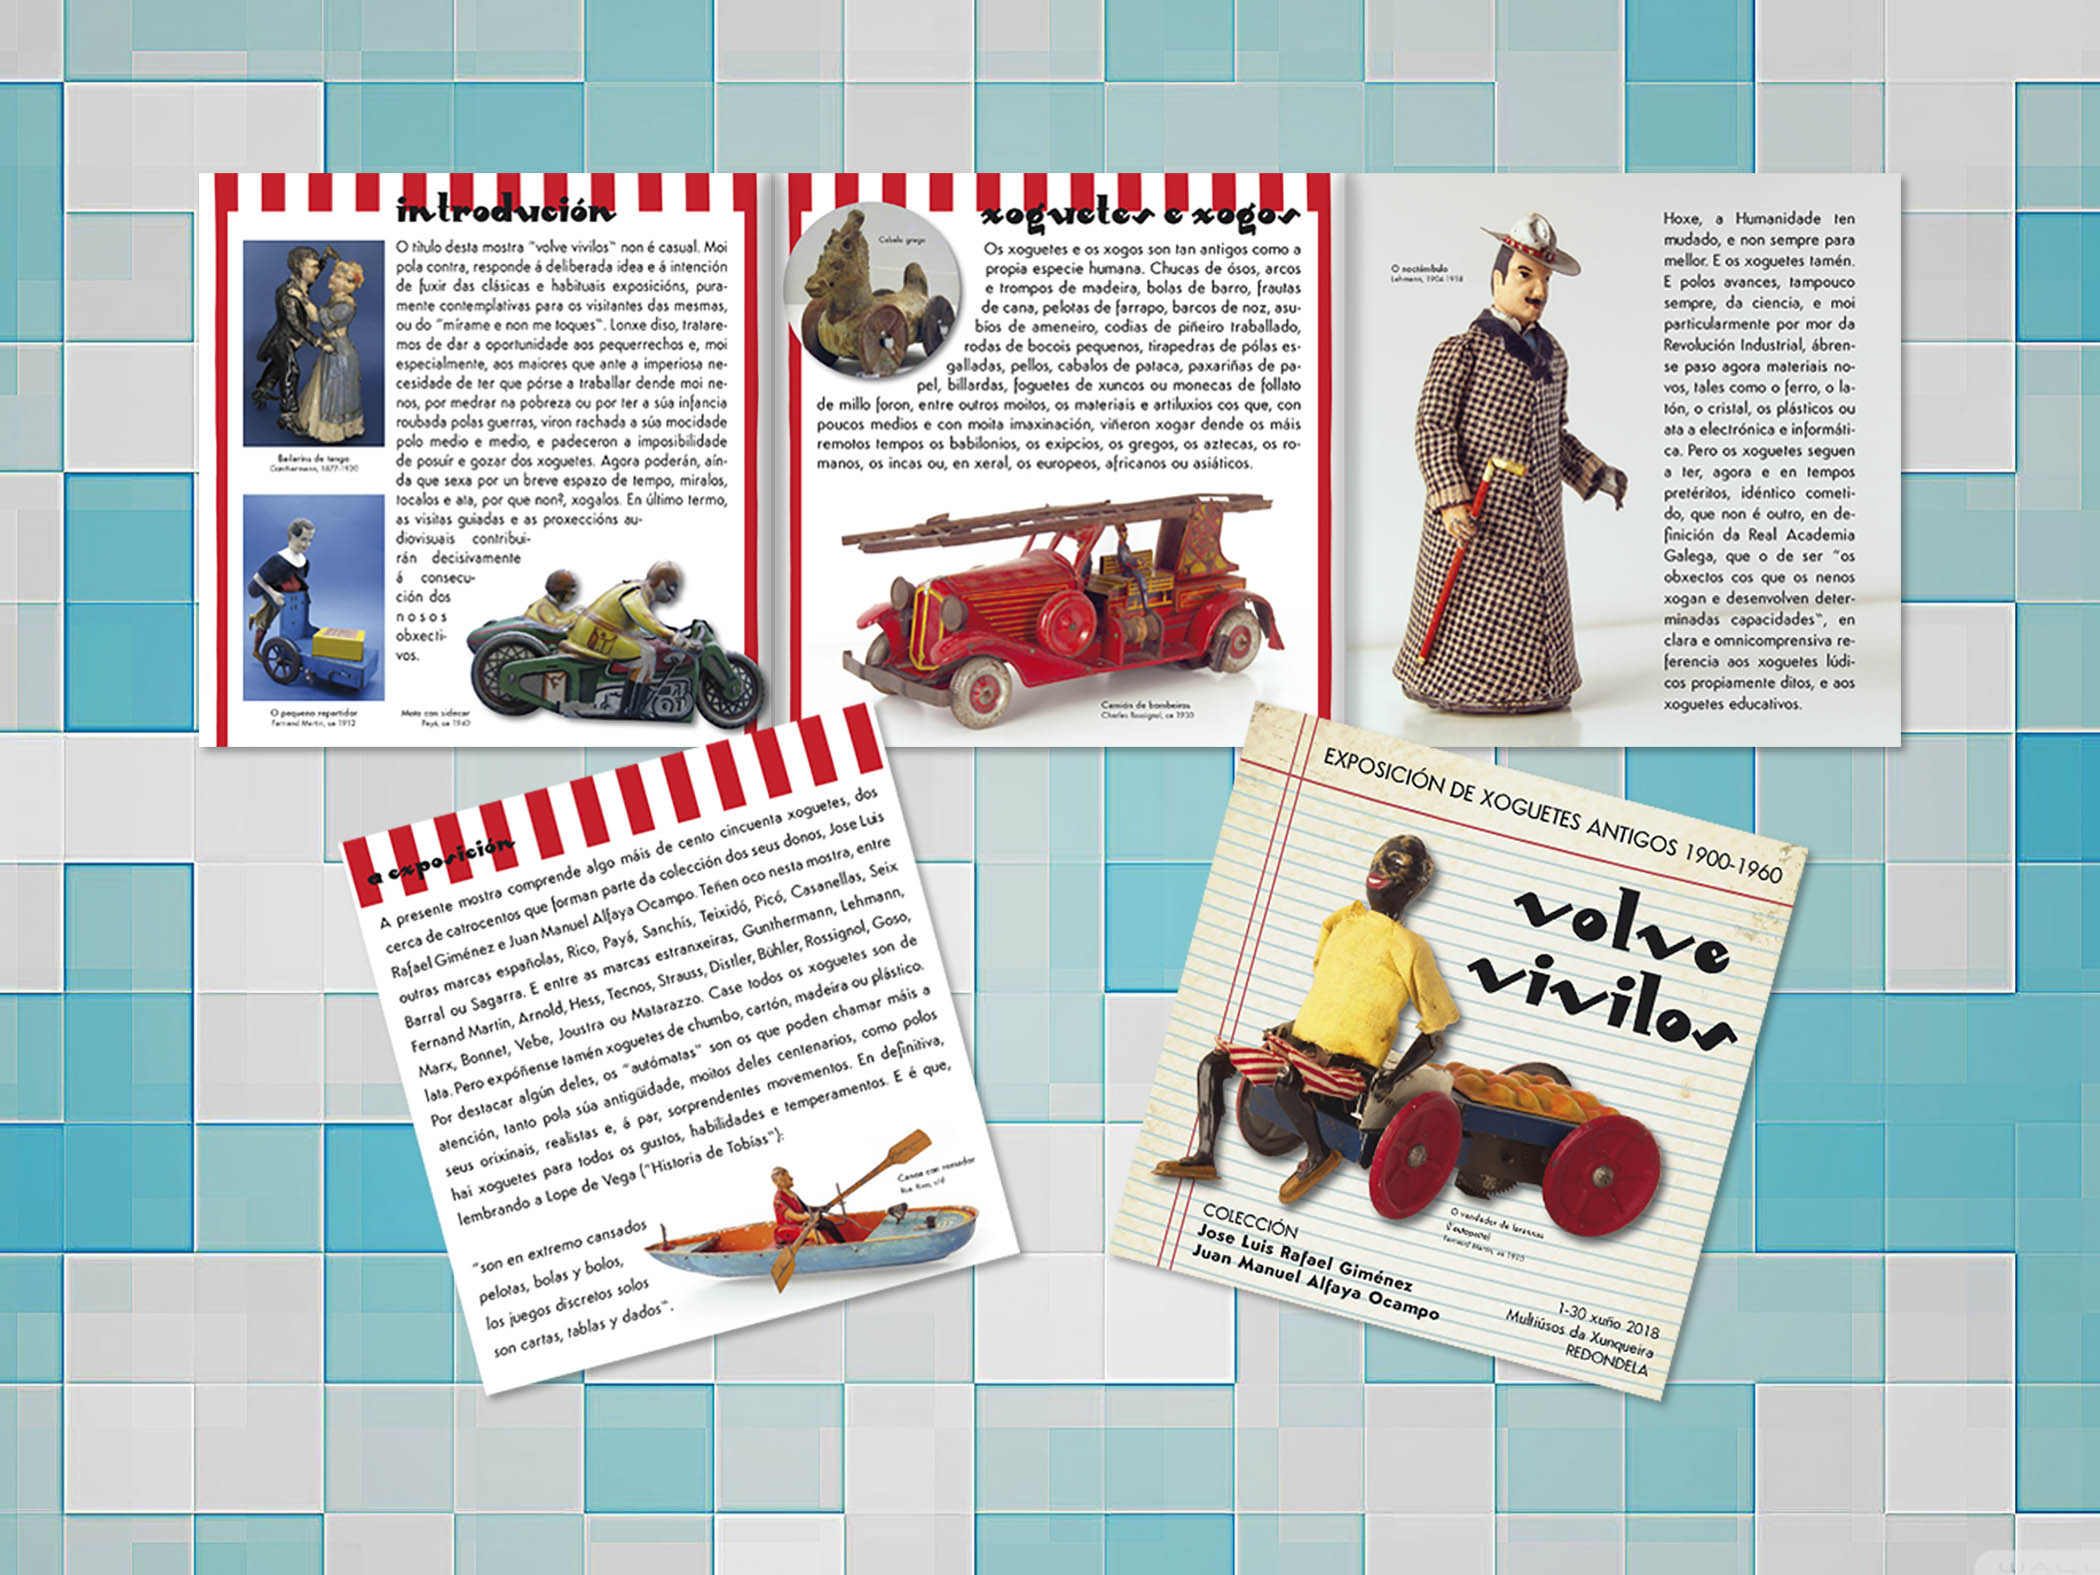 Xoguetes Antigos juguetes antiguos Folleto Redondela Pontevedra Diseño Publicidad Marketing cultura editorial